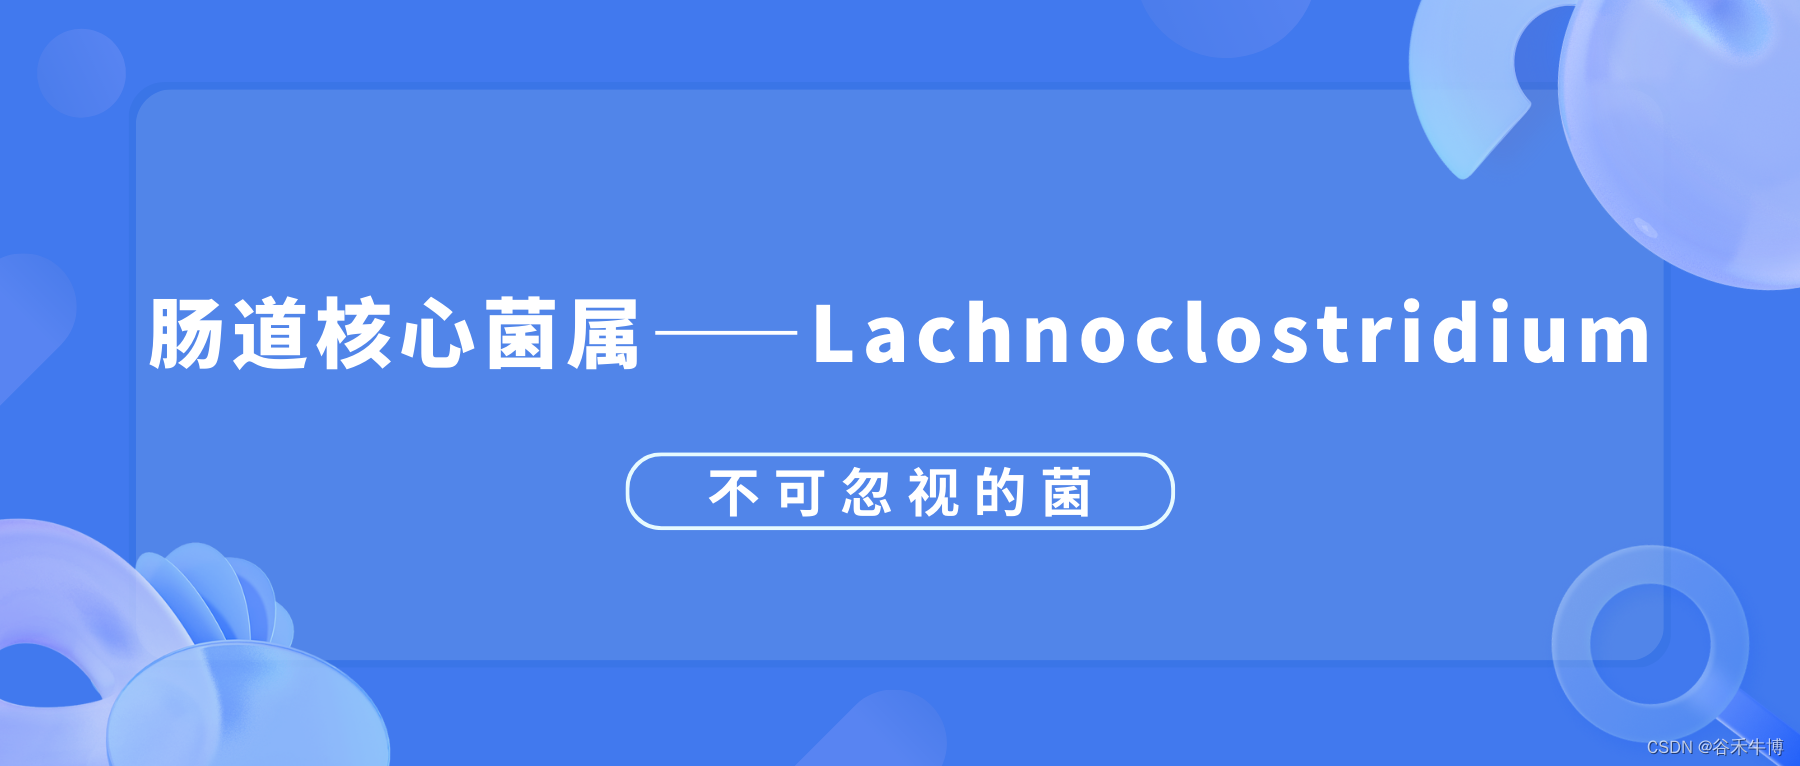 肠道核心菌属——Lachnoclostridium